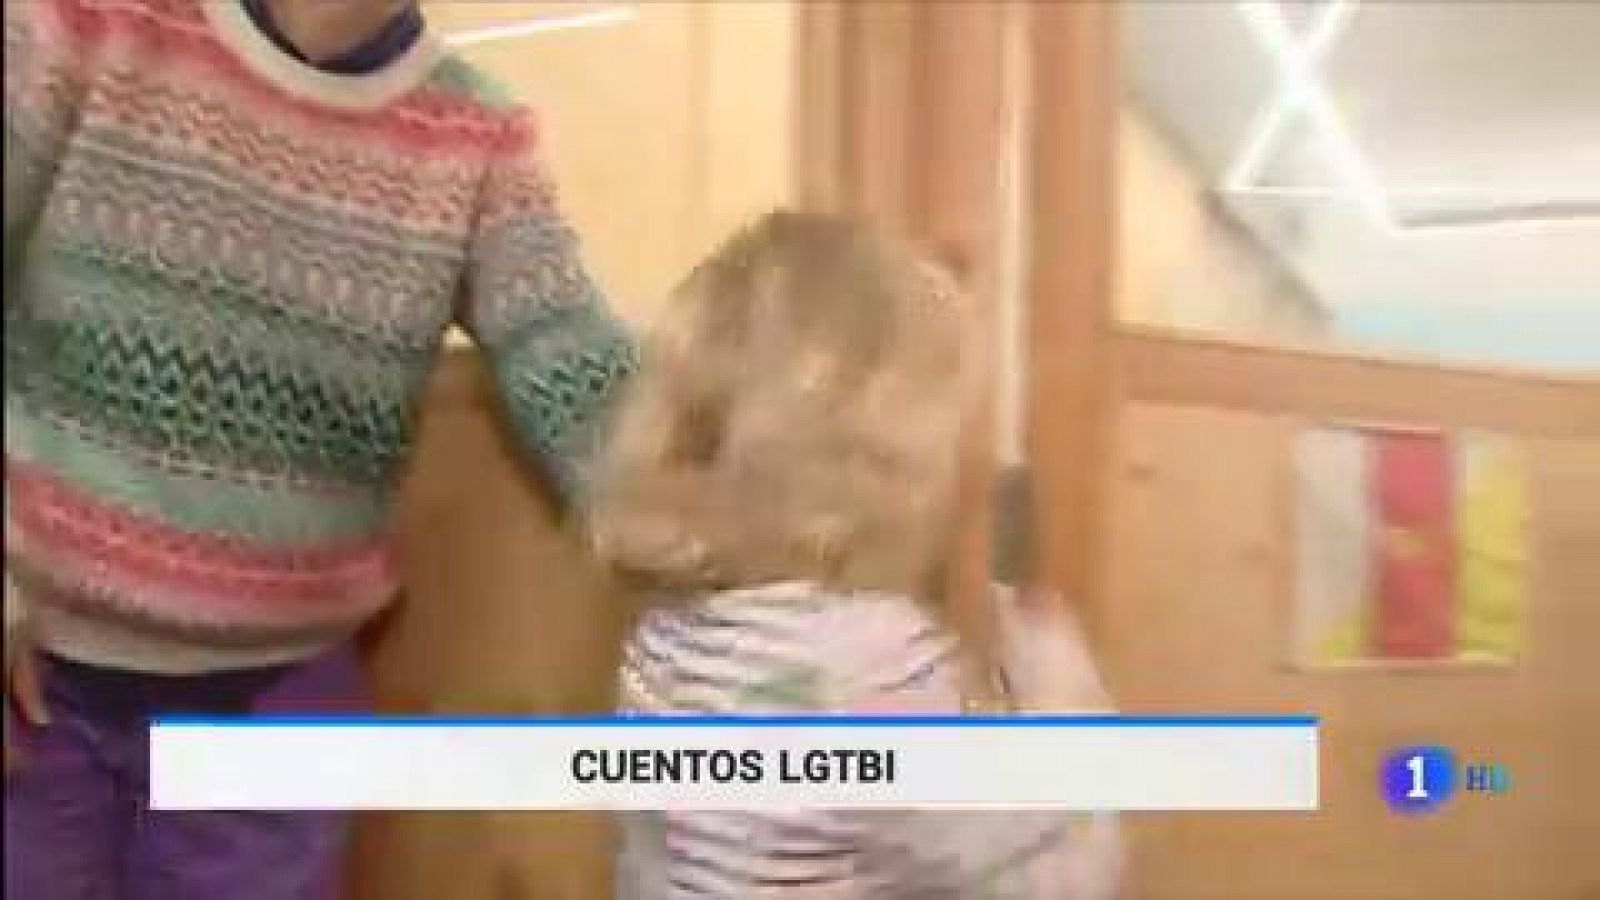 Telediario 2 - 08/12/19 - Un colegio de Barcelona trabaja la diversidad a través de los cuentos - RTVE.es